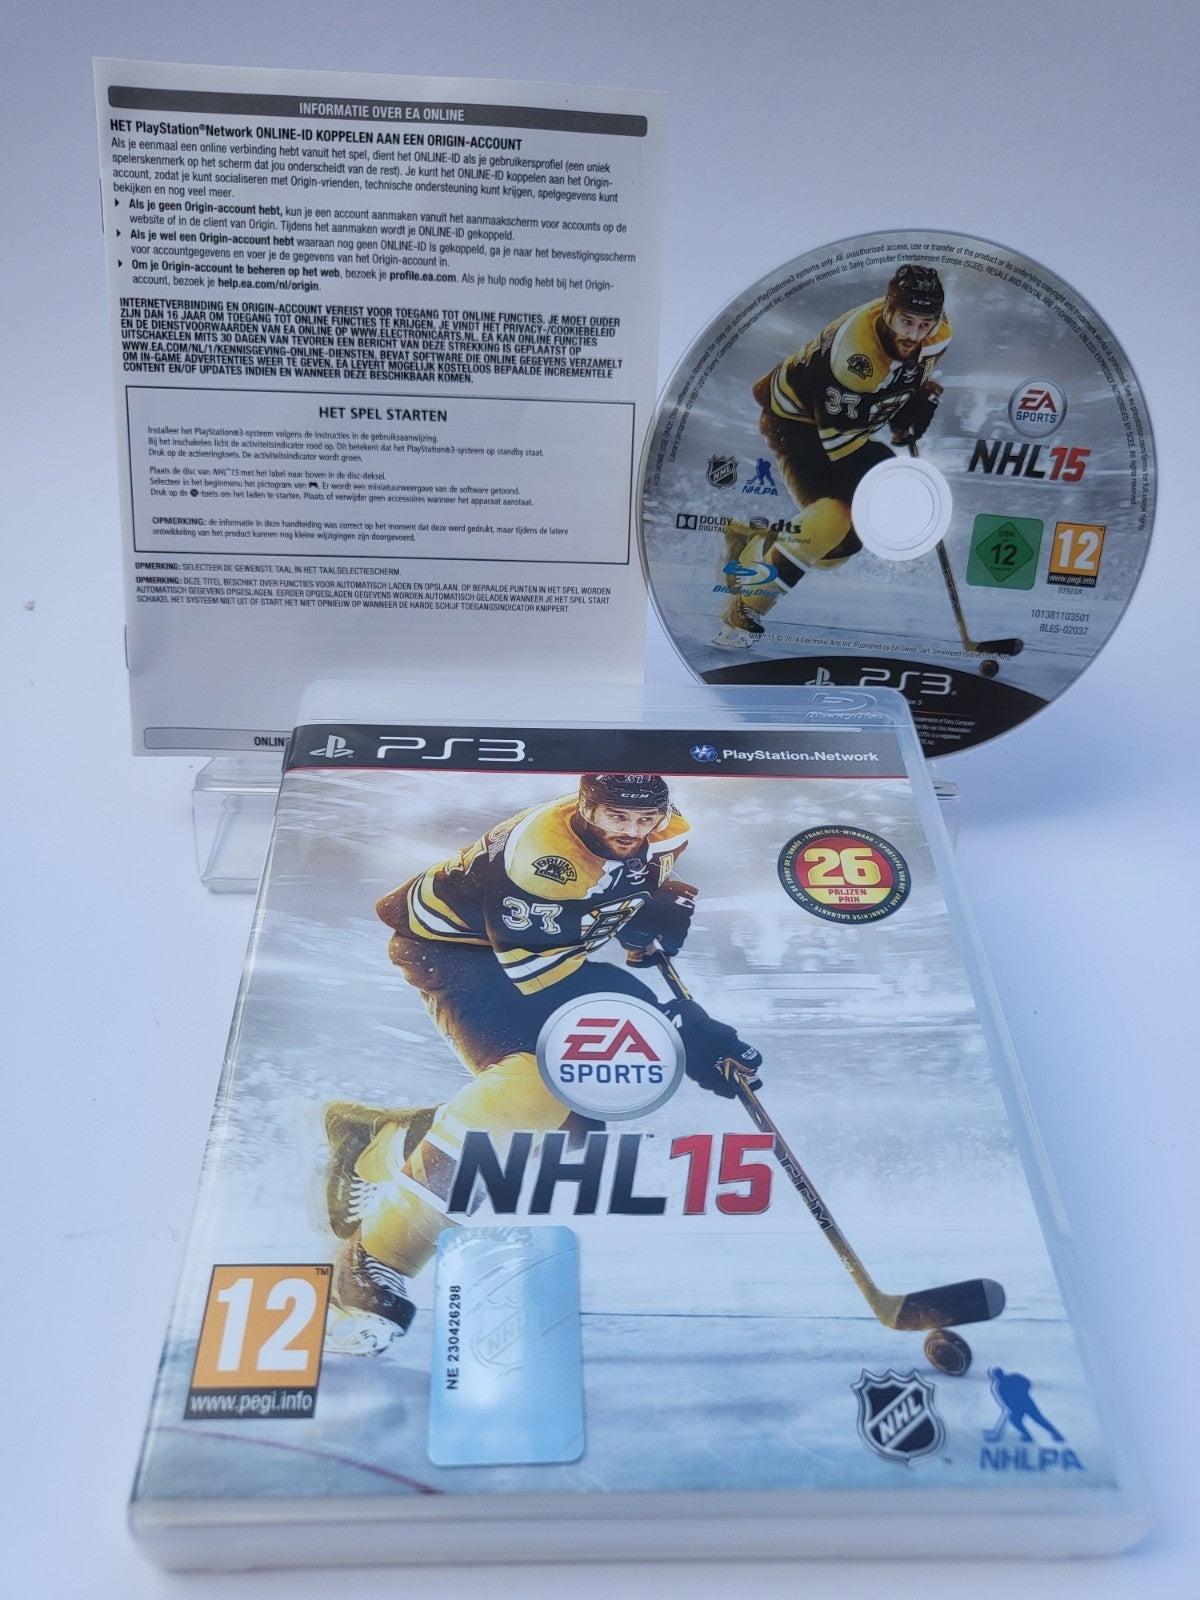 NHL 15 Playstation 3